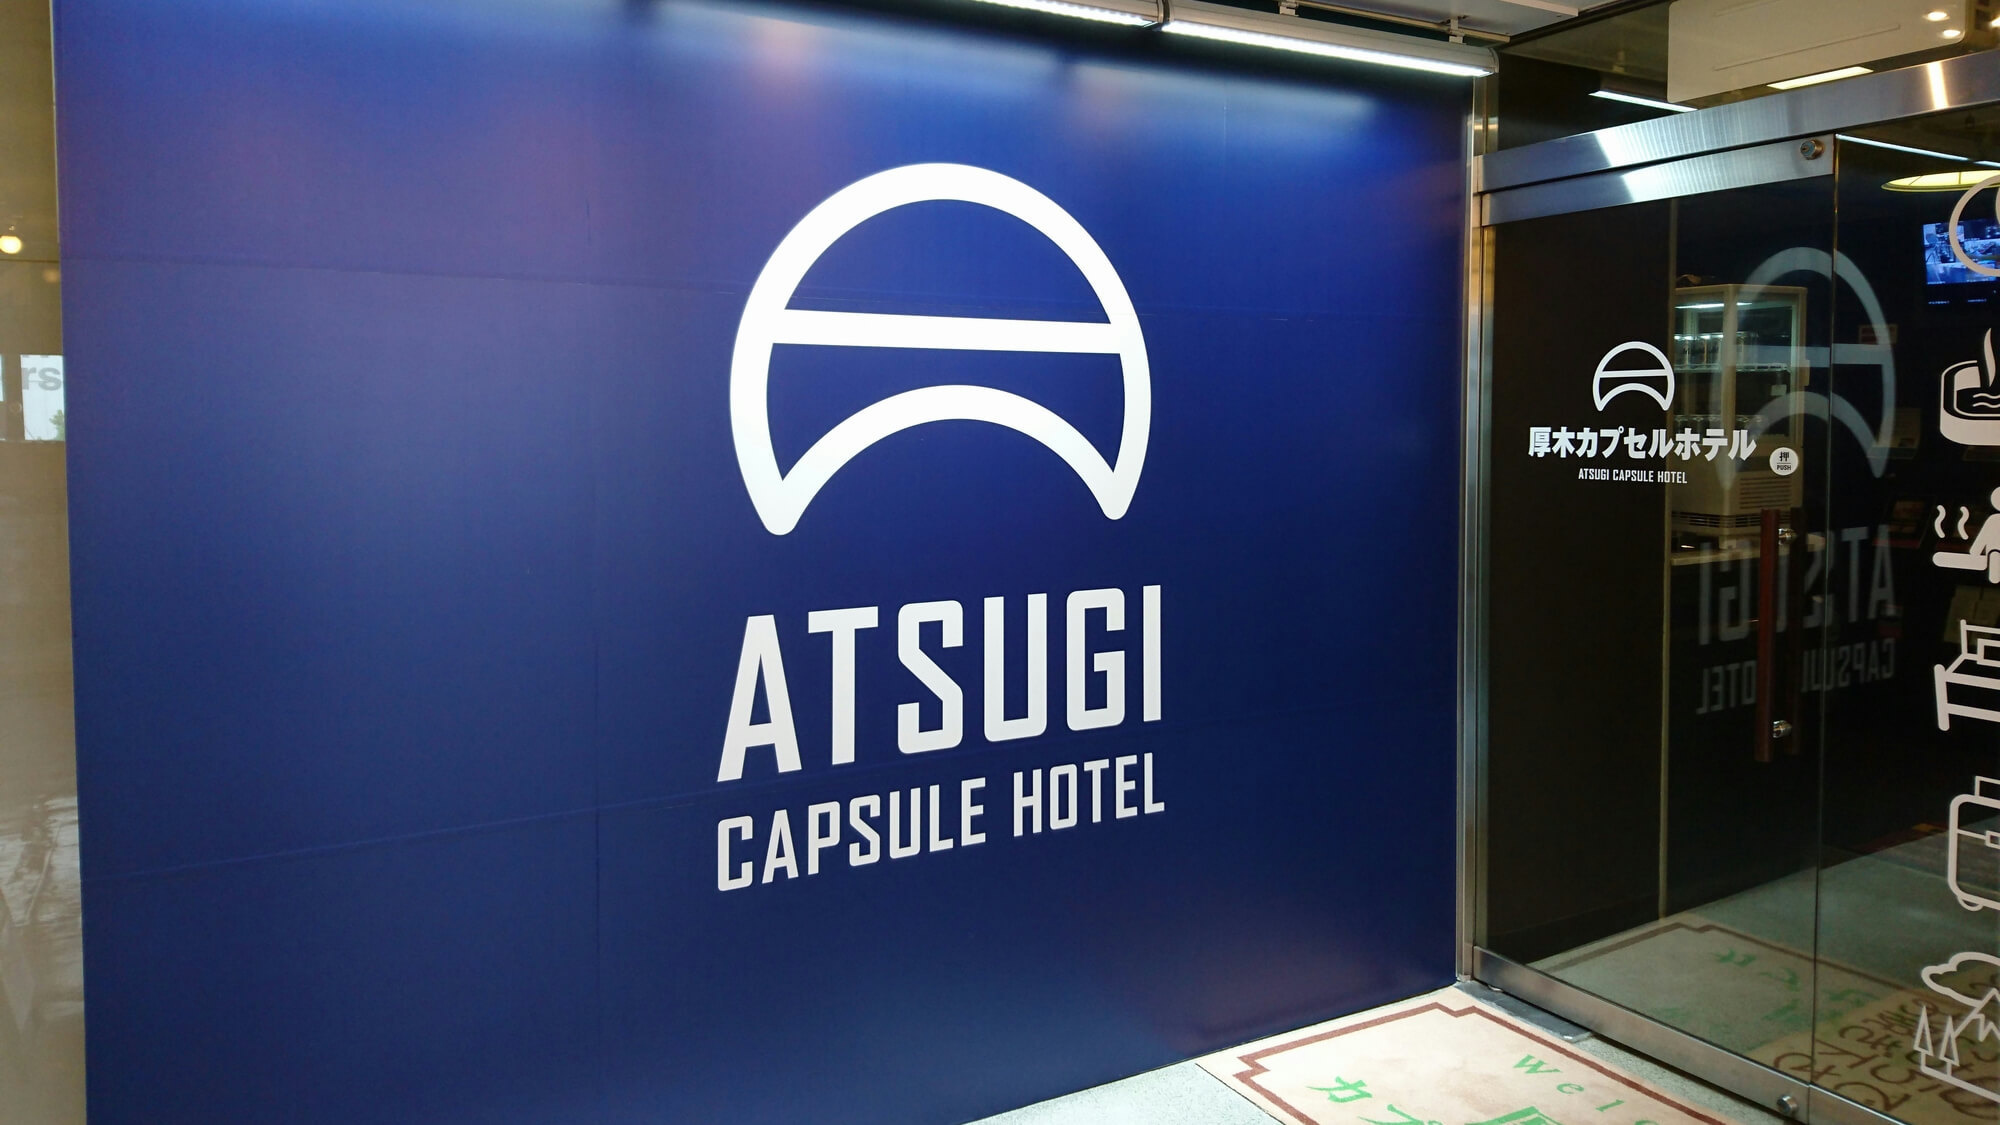 Atsugi Capsule Hotel